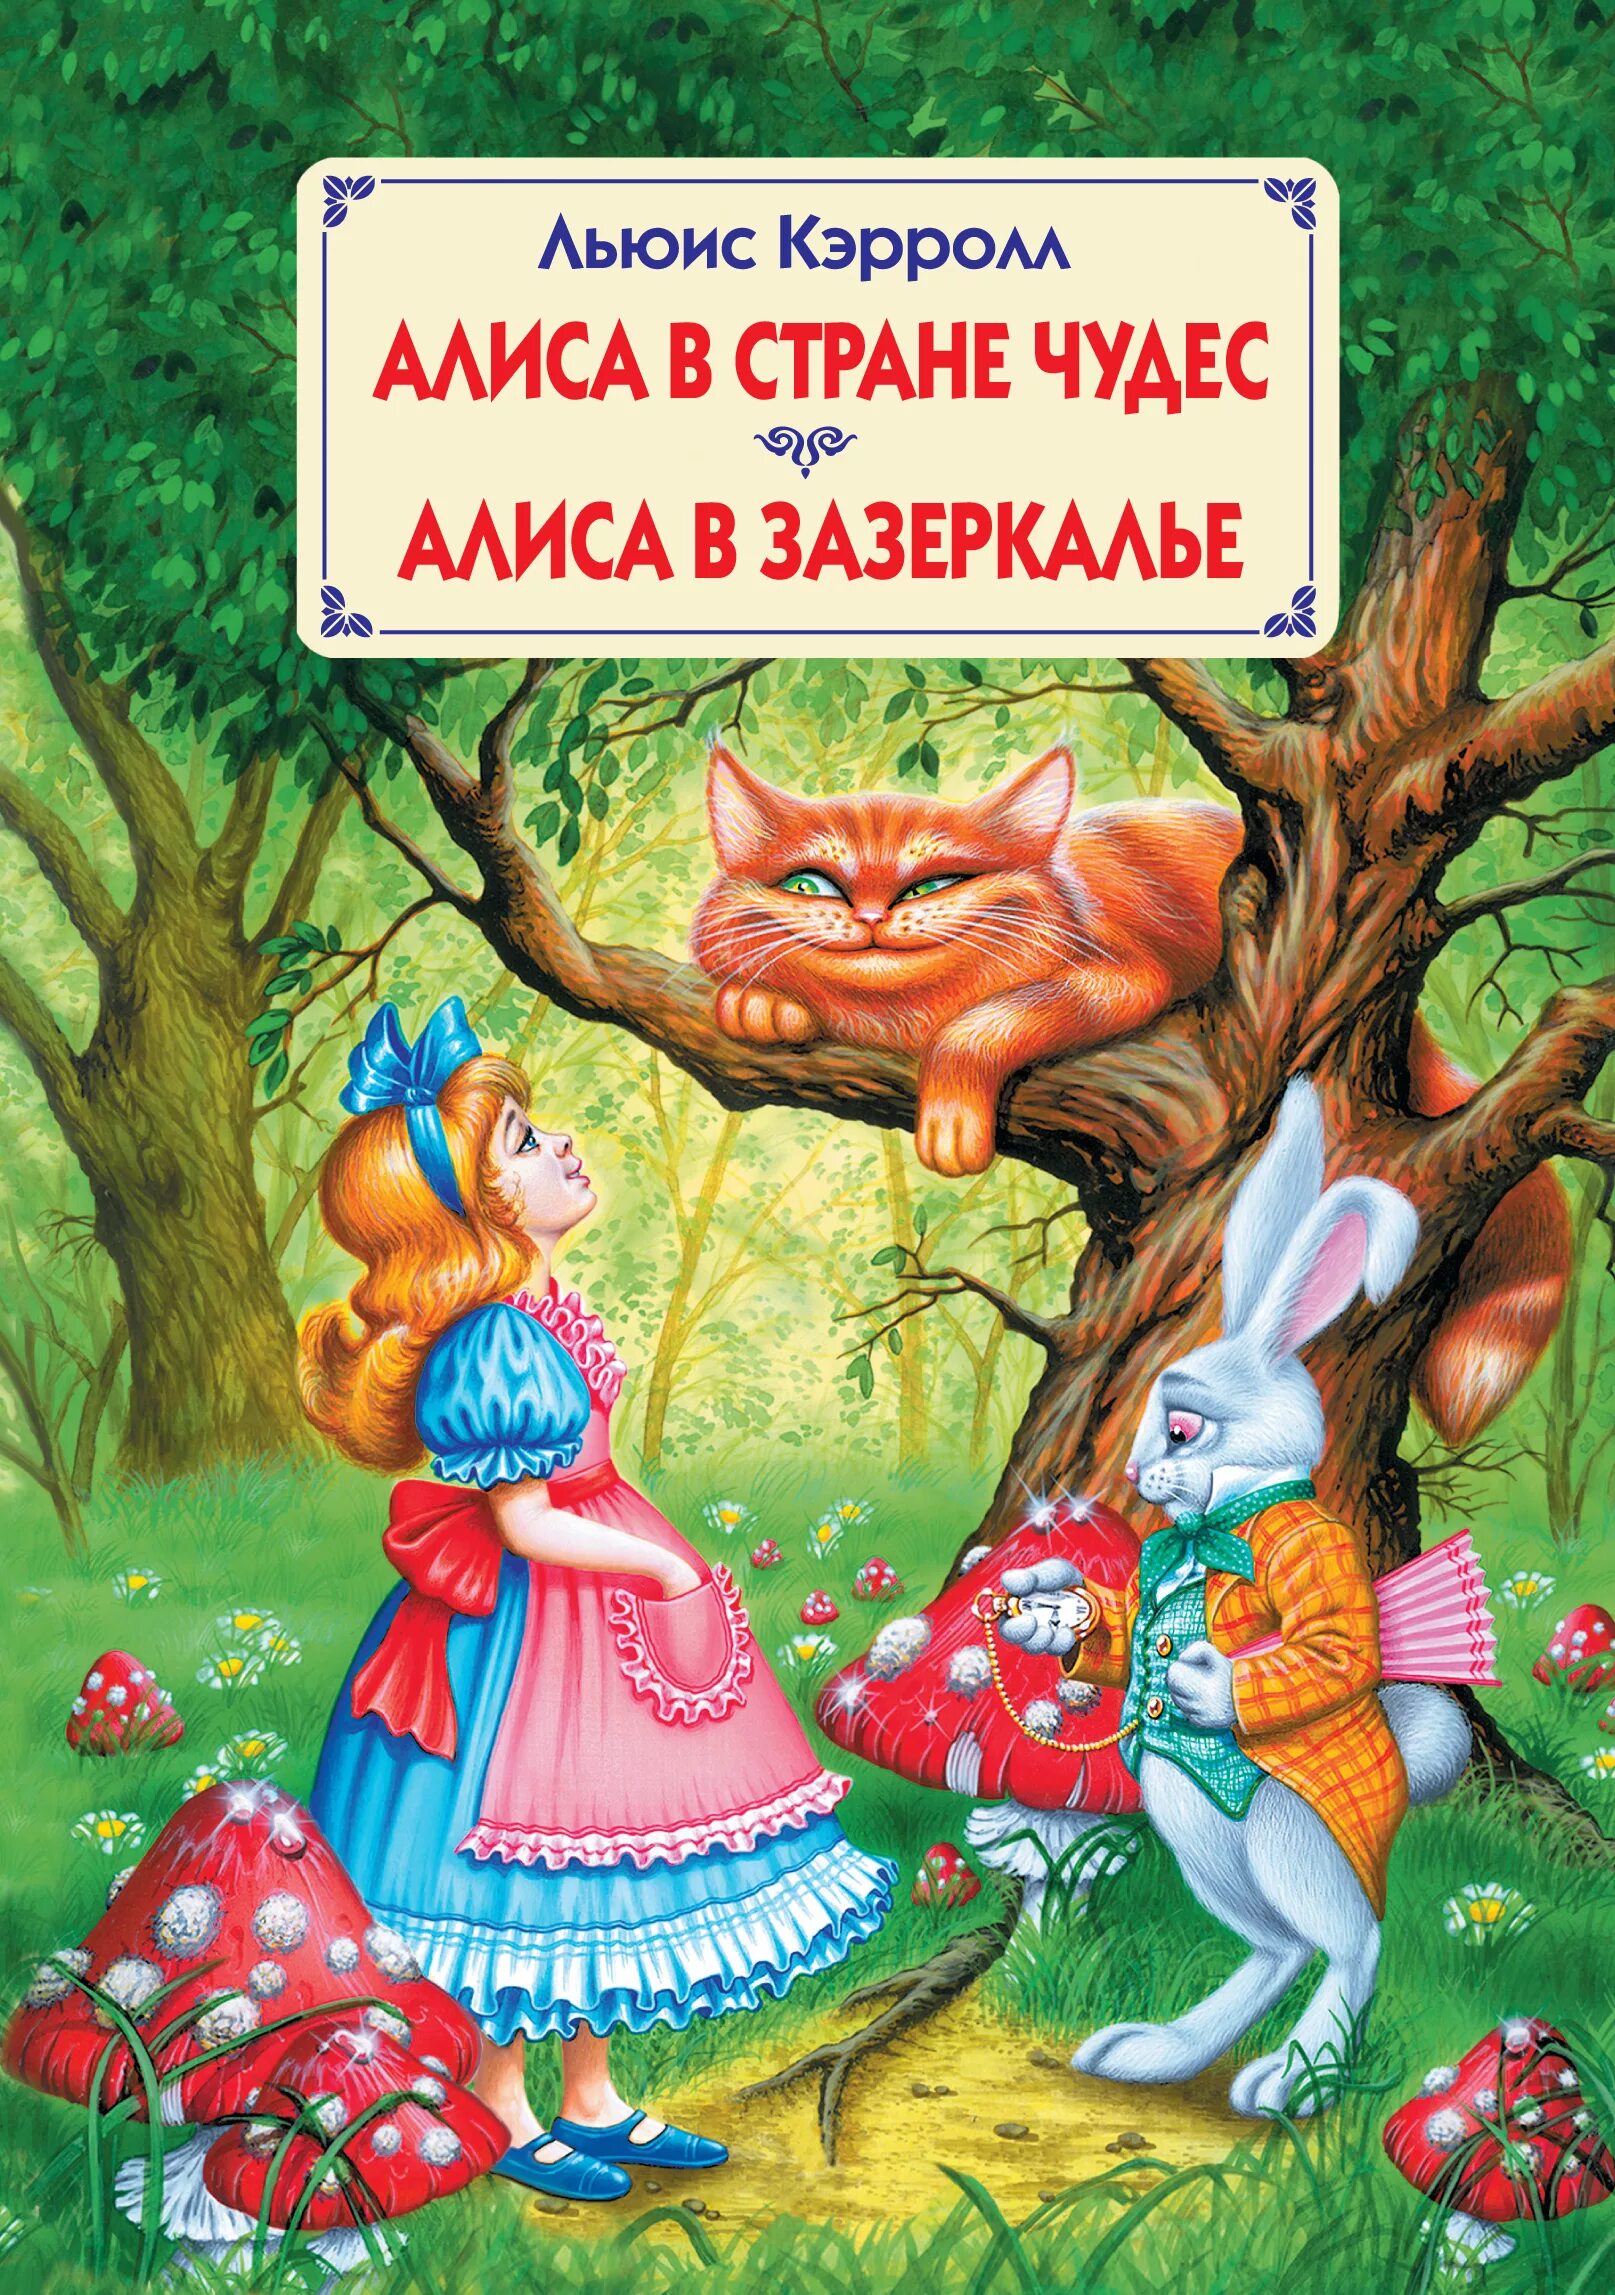 Алиса в стране чудес книга автор. Кэрролл Льюис "Алиса в стране чудес". Льюис Кэролл Алиса в стране чудес. Льюис Кэрролл Алиса в стране чудес обложка. Алиса в стране чудес Льюис Кэрролл книга.